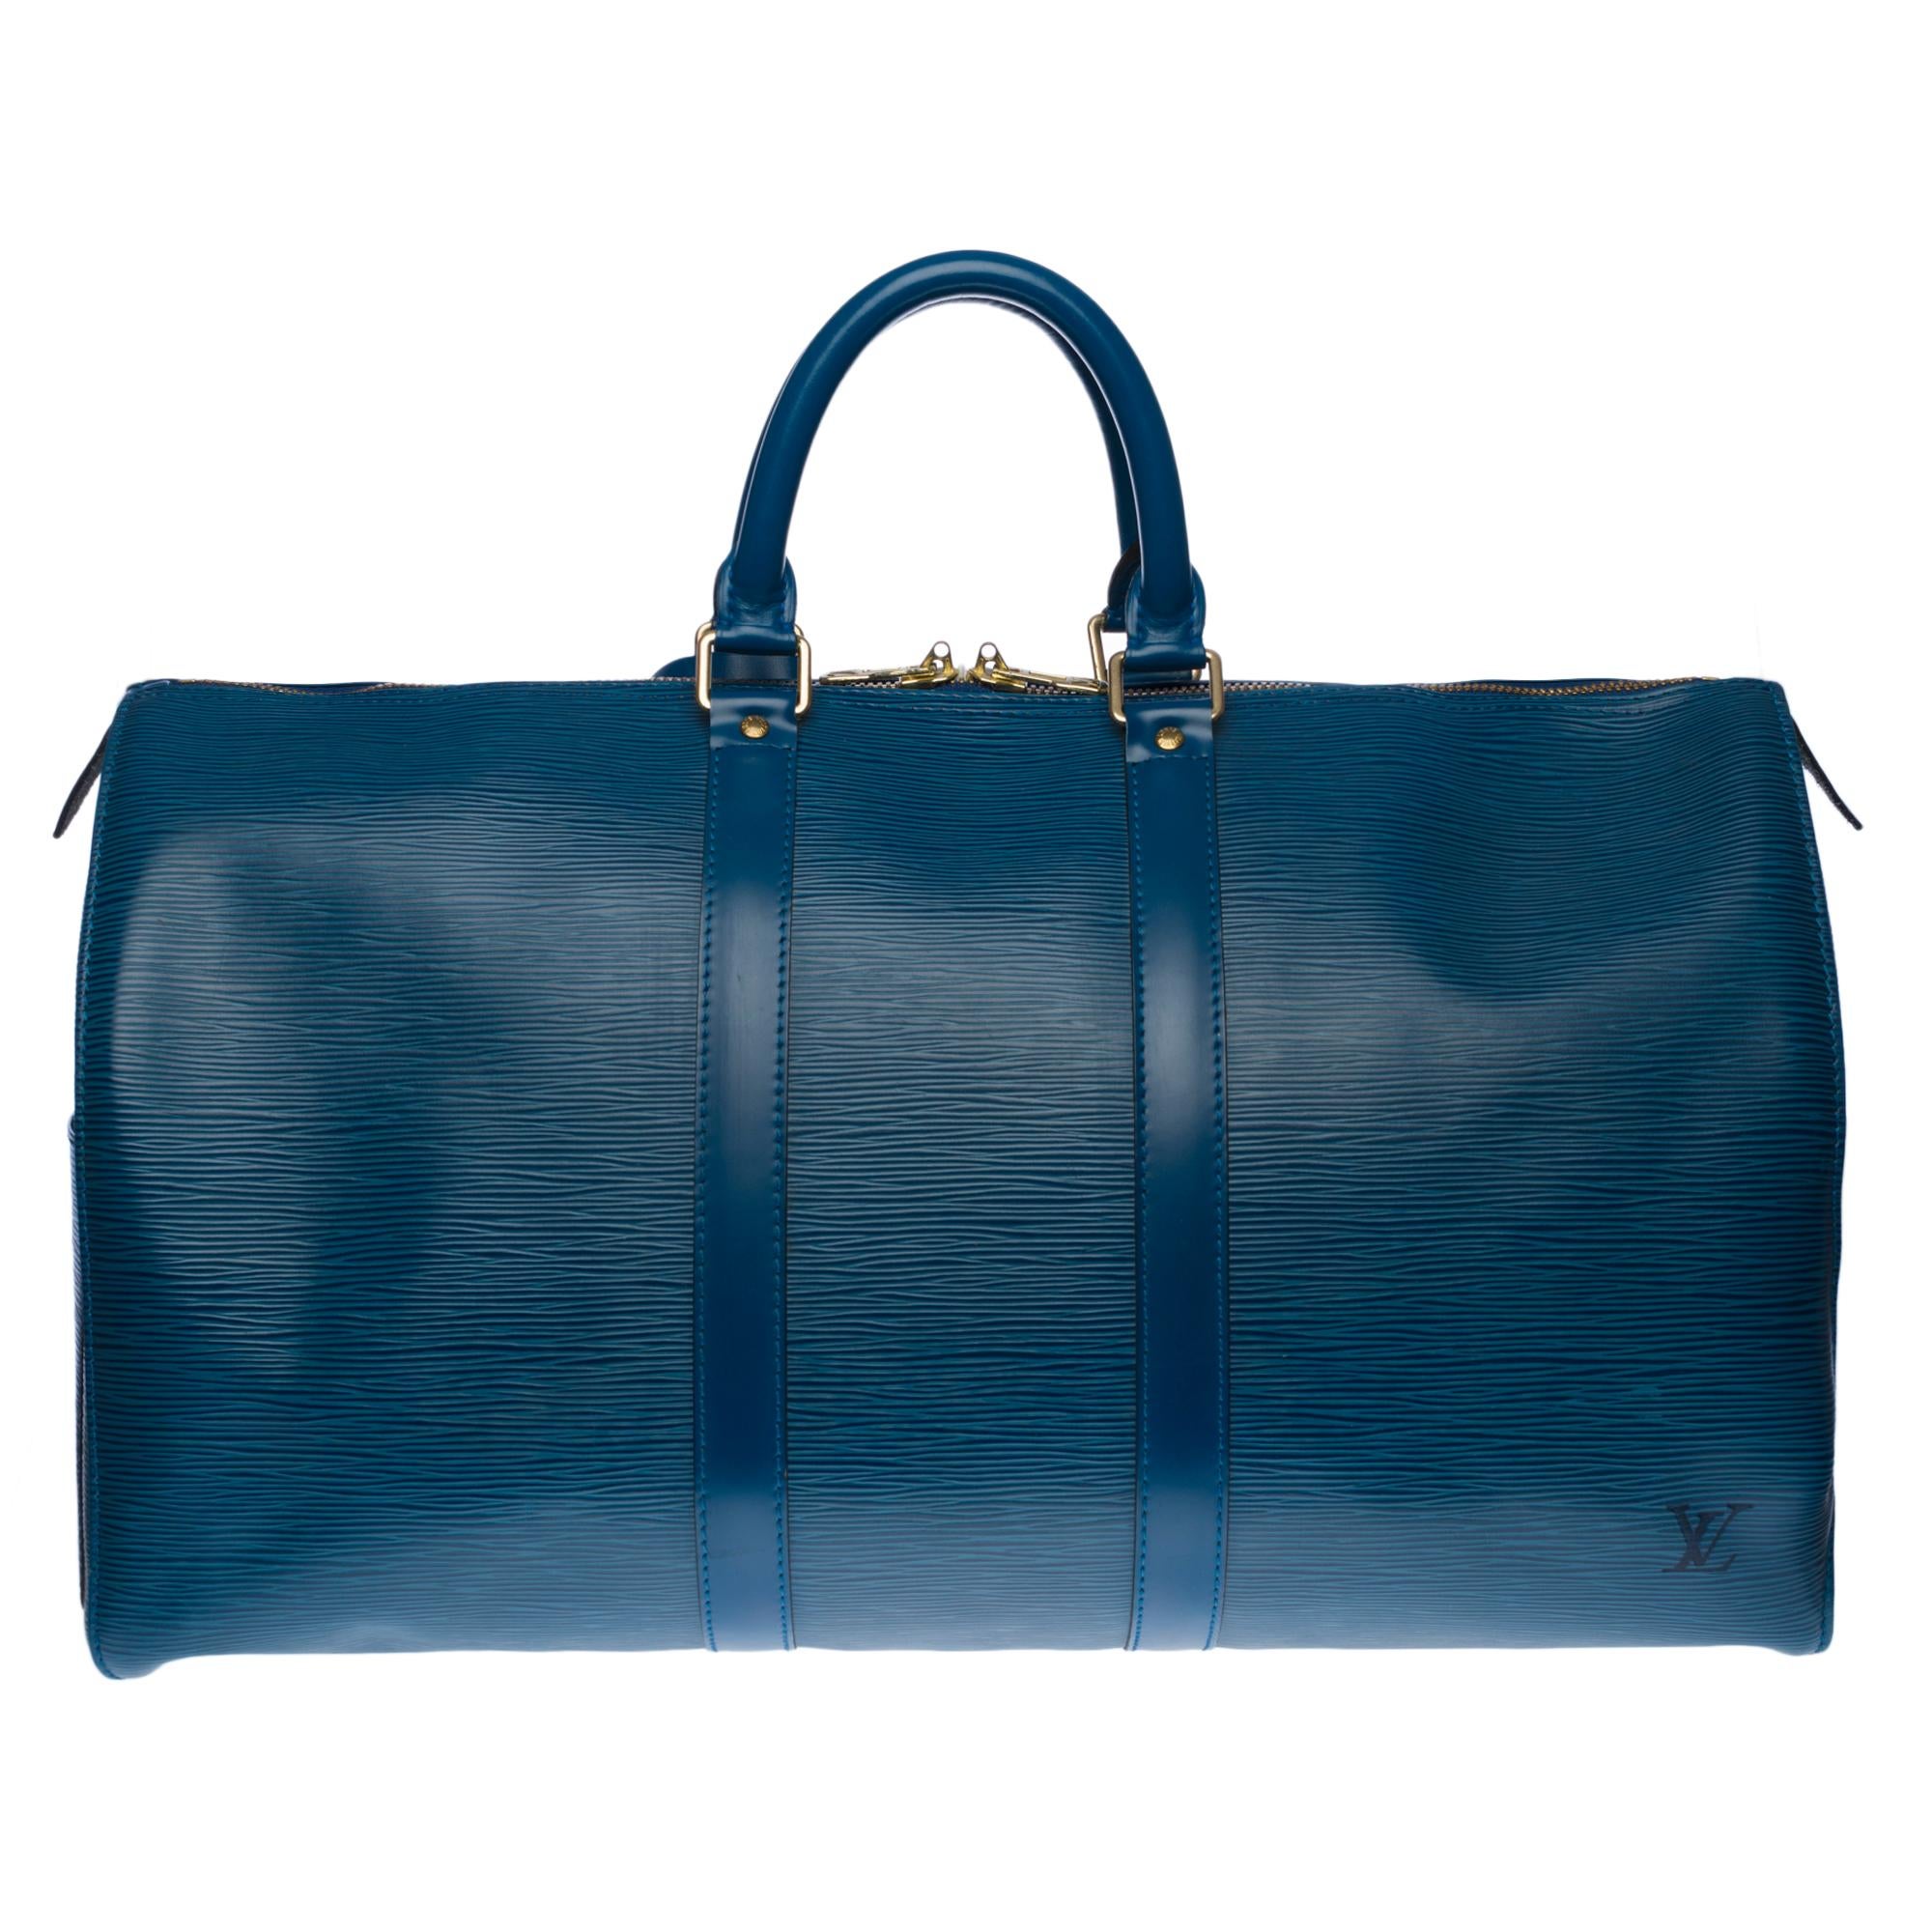 The spacious Louis Vuitton bag 